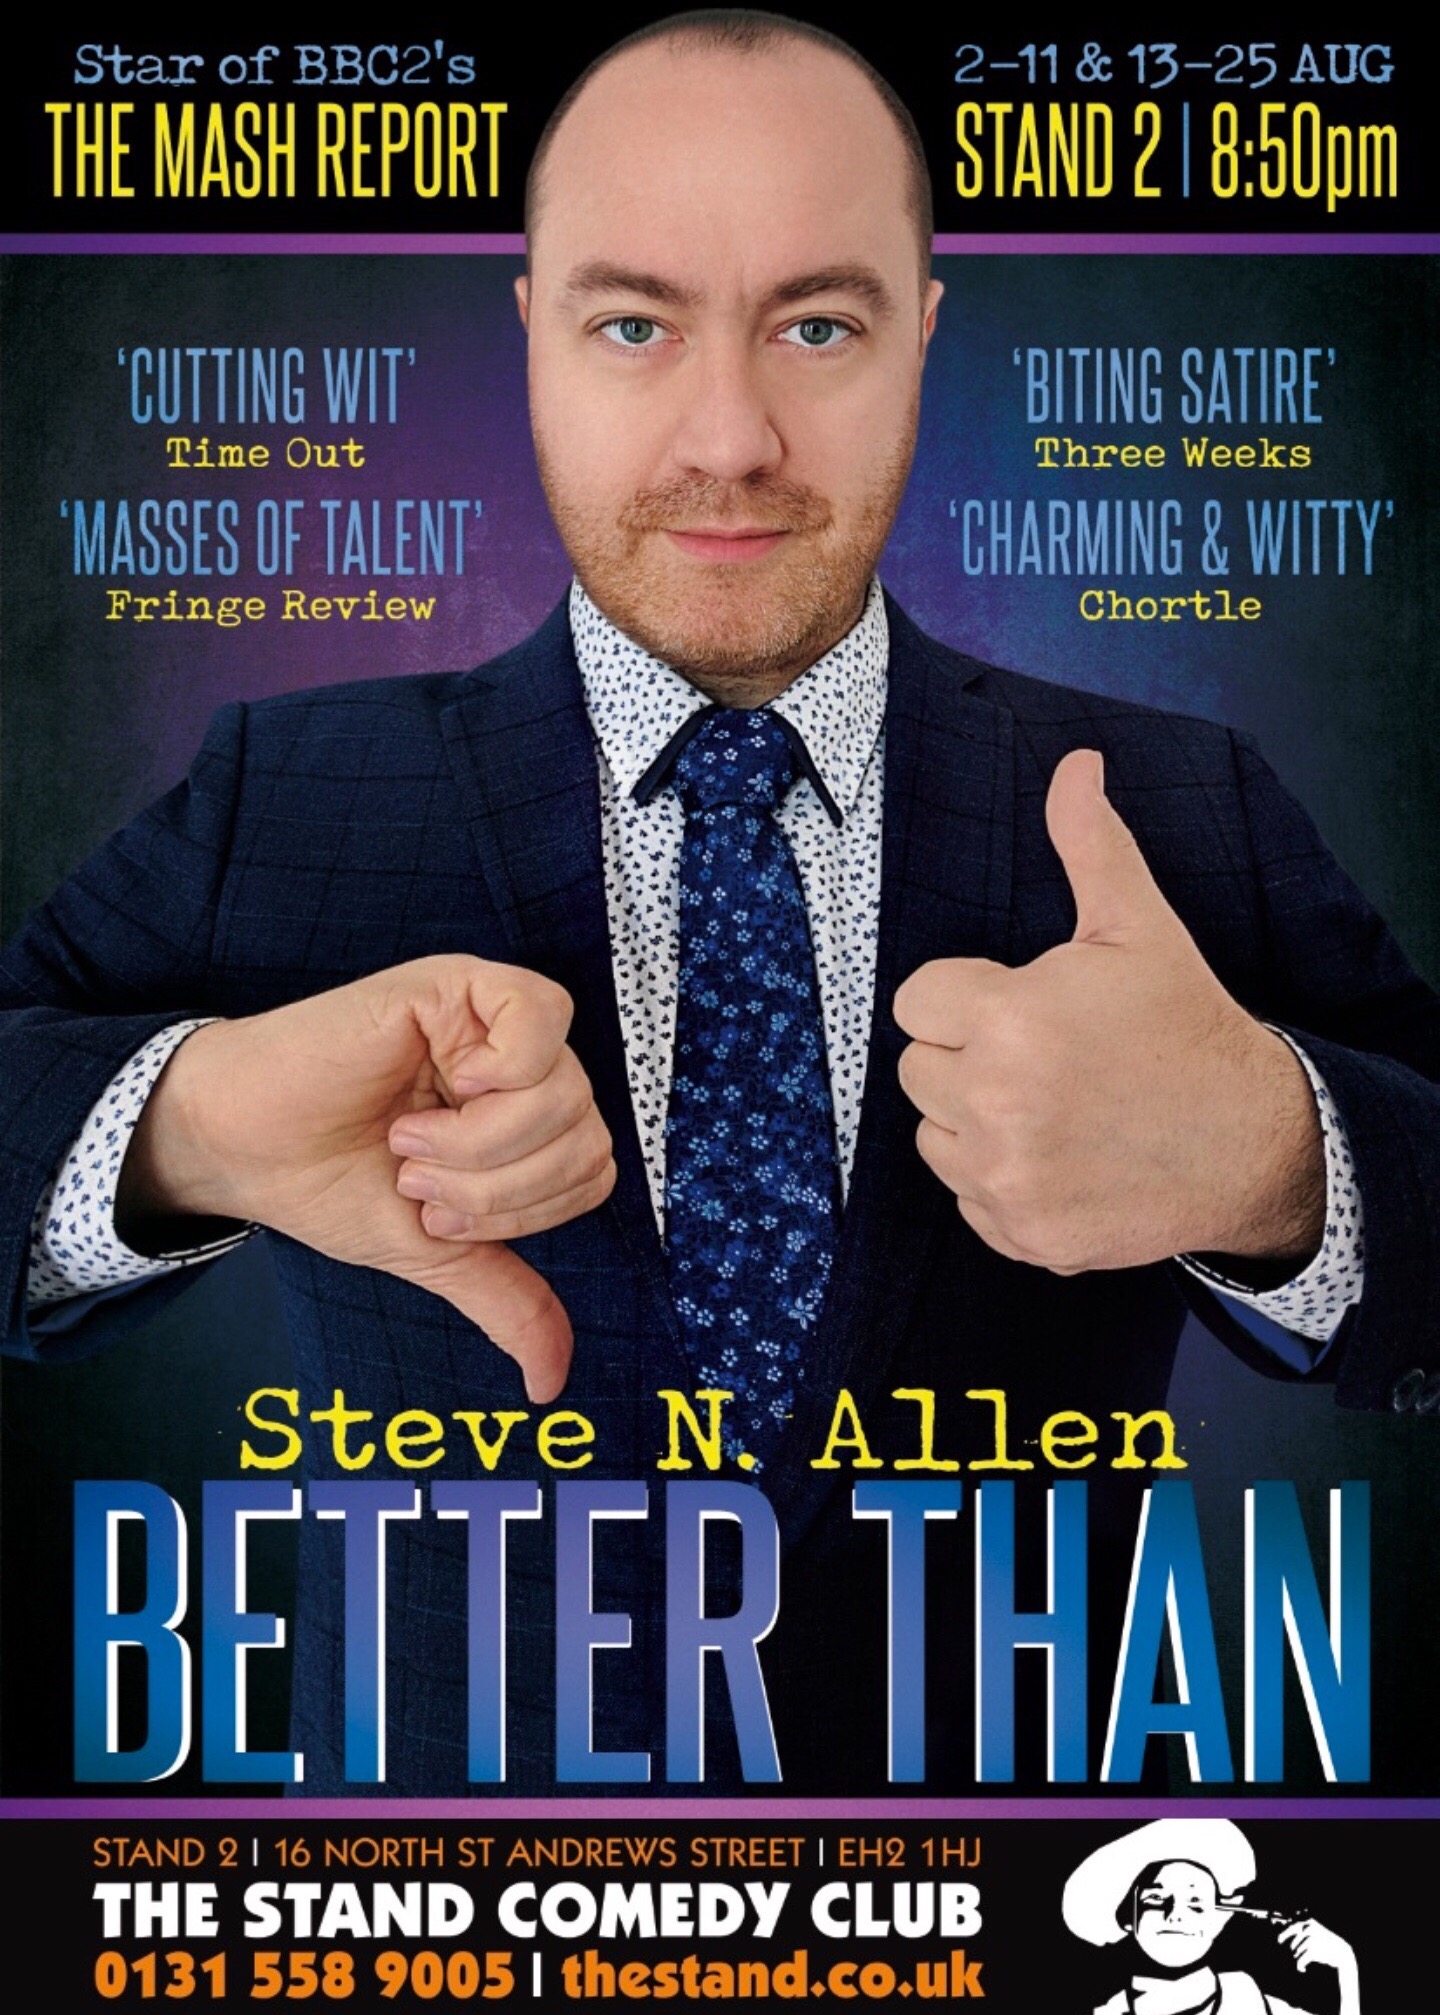 The poster for Steve N Allen: Better Than